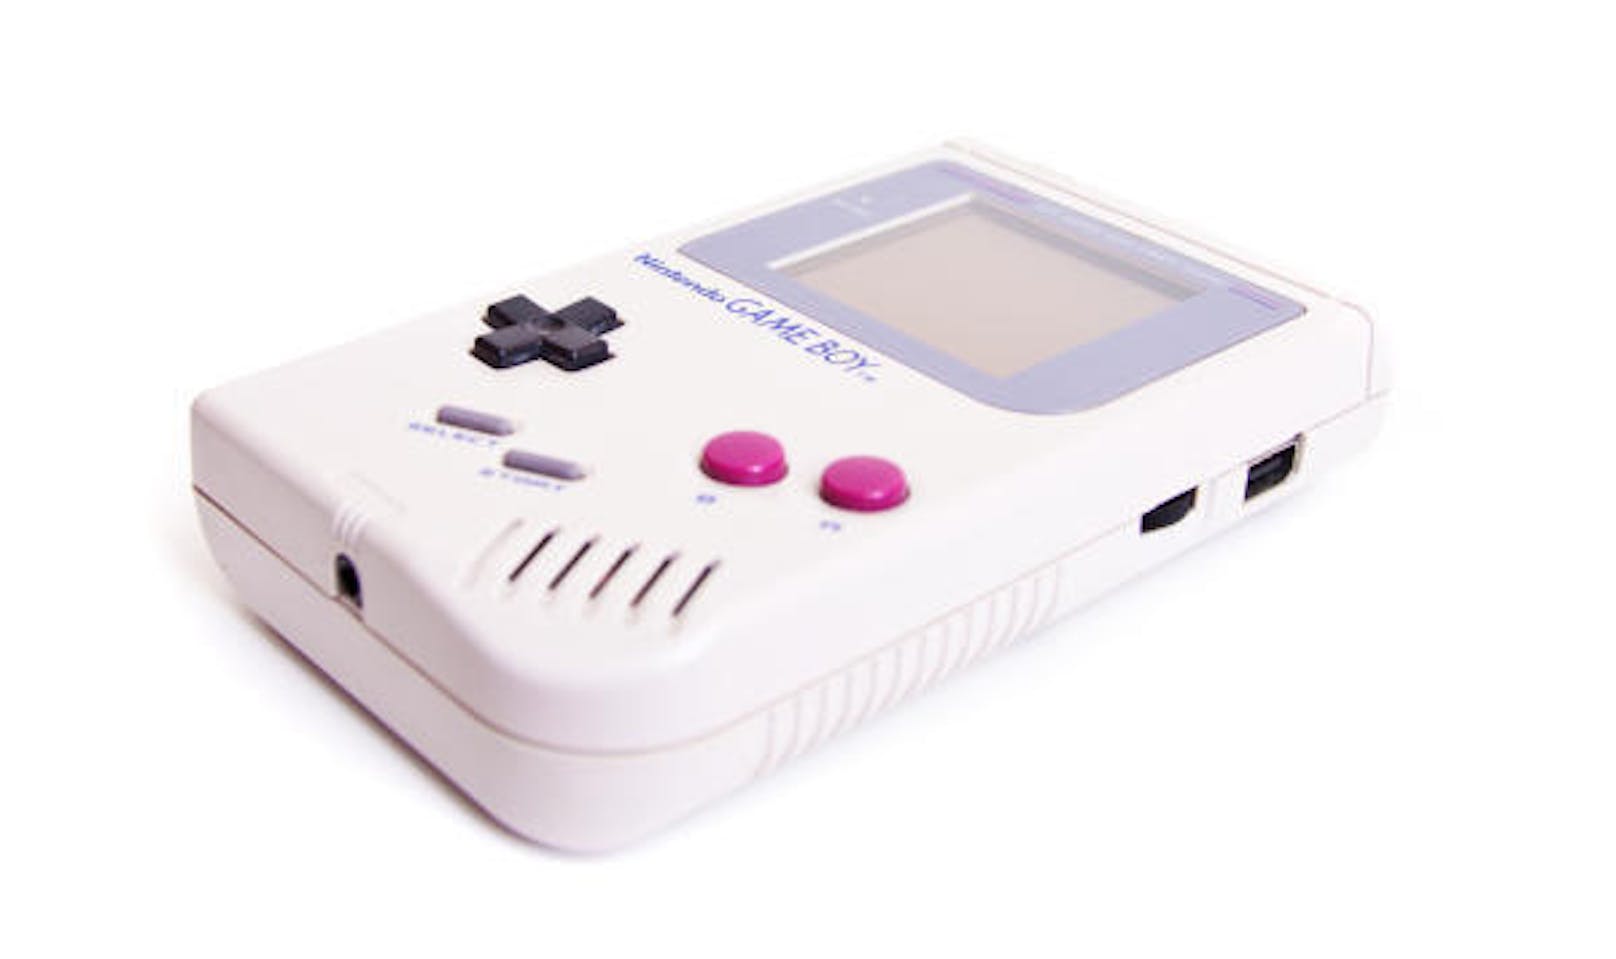 Möglicherweise wird es nach den Mini-Versionen des NES und des SNES bald auch eine Neuauflage des Gameboy geben. Darauf deutet ein Antrag auf Markenschutz hin, den Nintendo in Japan eingereicht hat. Ob es dabei um geplante Produkte geht, die nur in einem Gameboy-Design daherkommen, oder ob die Handheld-Konsole wirklich als Mini-Version auf den Markt kommt, ist nicht klar. Nintendo hat sich dazu nicht geäußert.